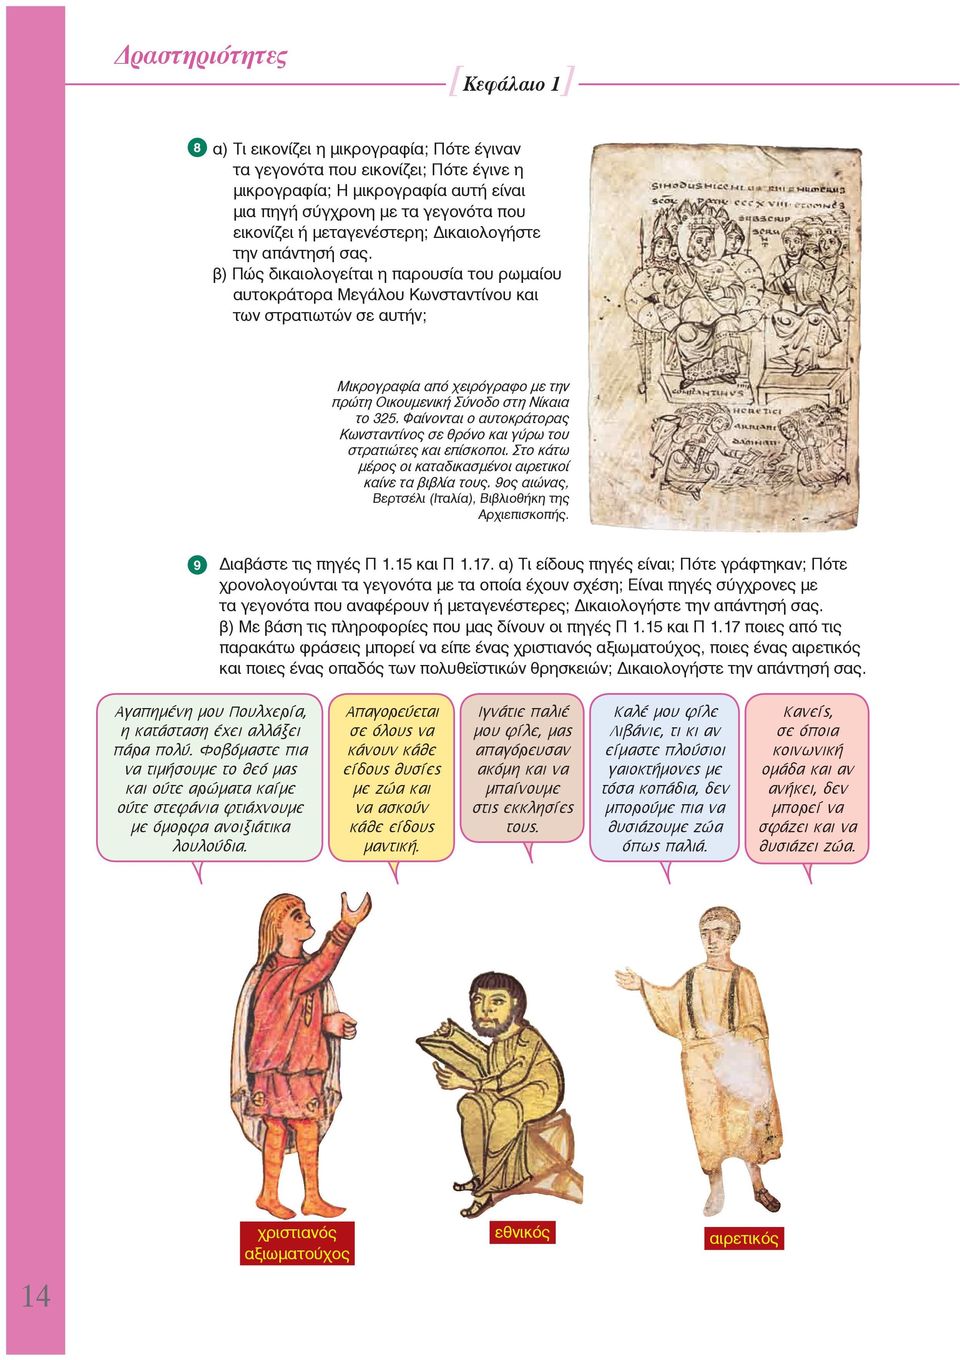 β) Πώς δικαιολογείται η παρουσία του ρωμαίου αυτοκράτορα Μεγάλου Κωνσταντίνου και των στρατιωτών σε αυτήν; Μικρογραφία από χειρόγραφο με την πρώτη Οικουμενική Σύνοδο στη Νίκαια το 325.